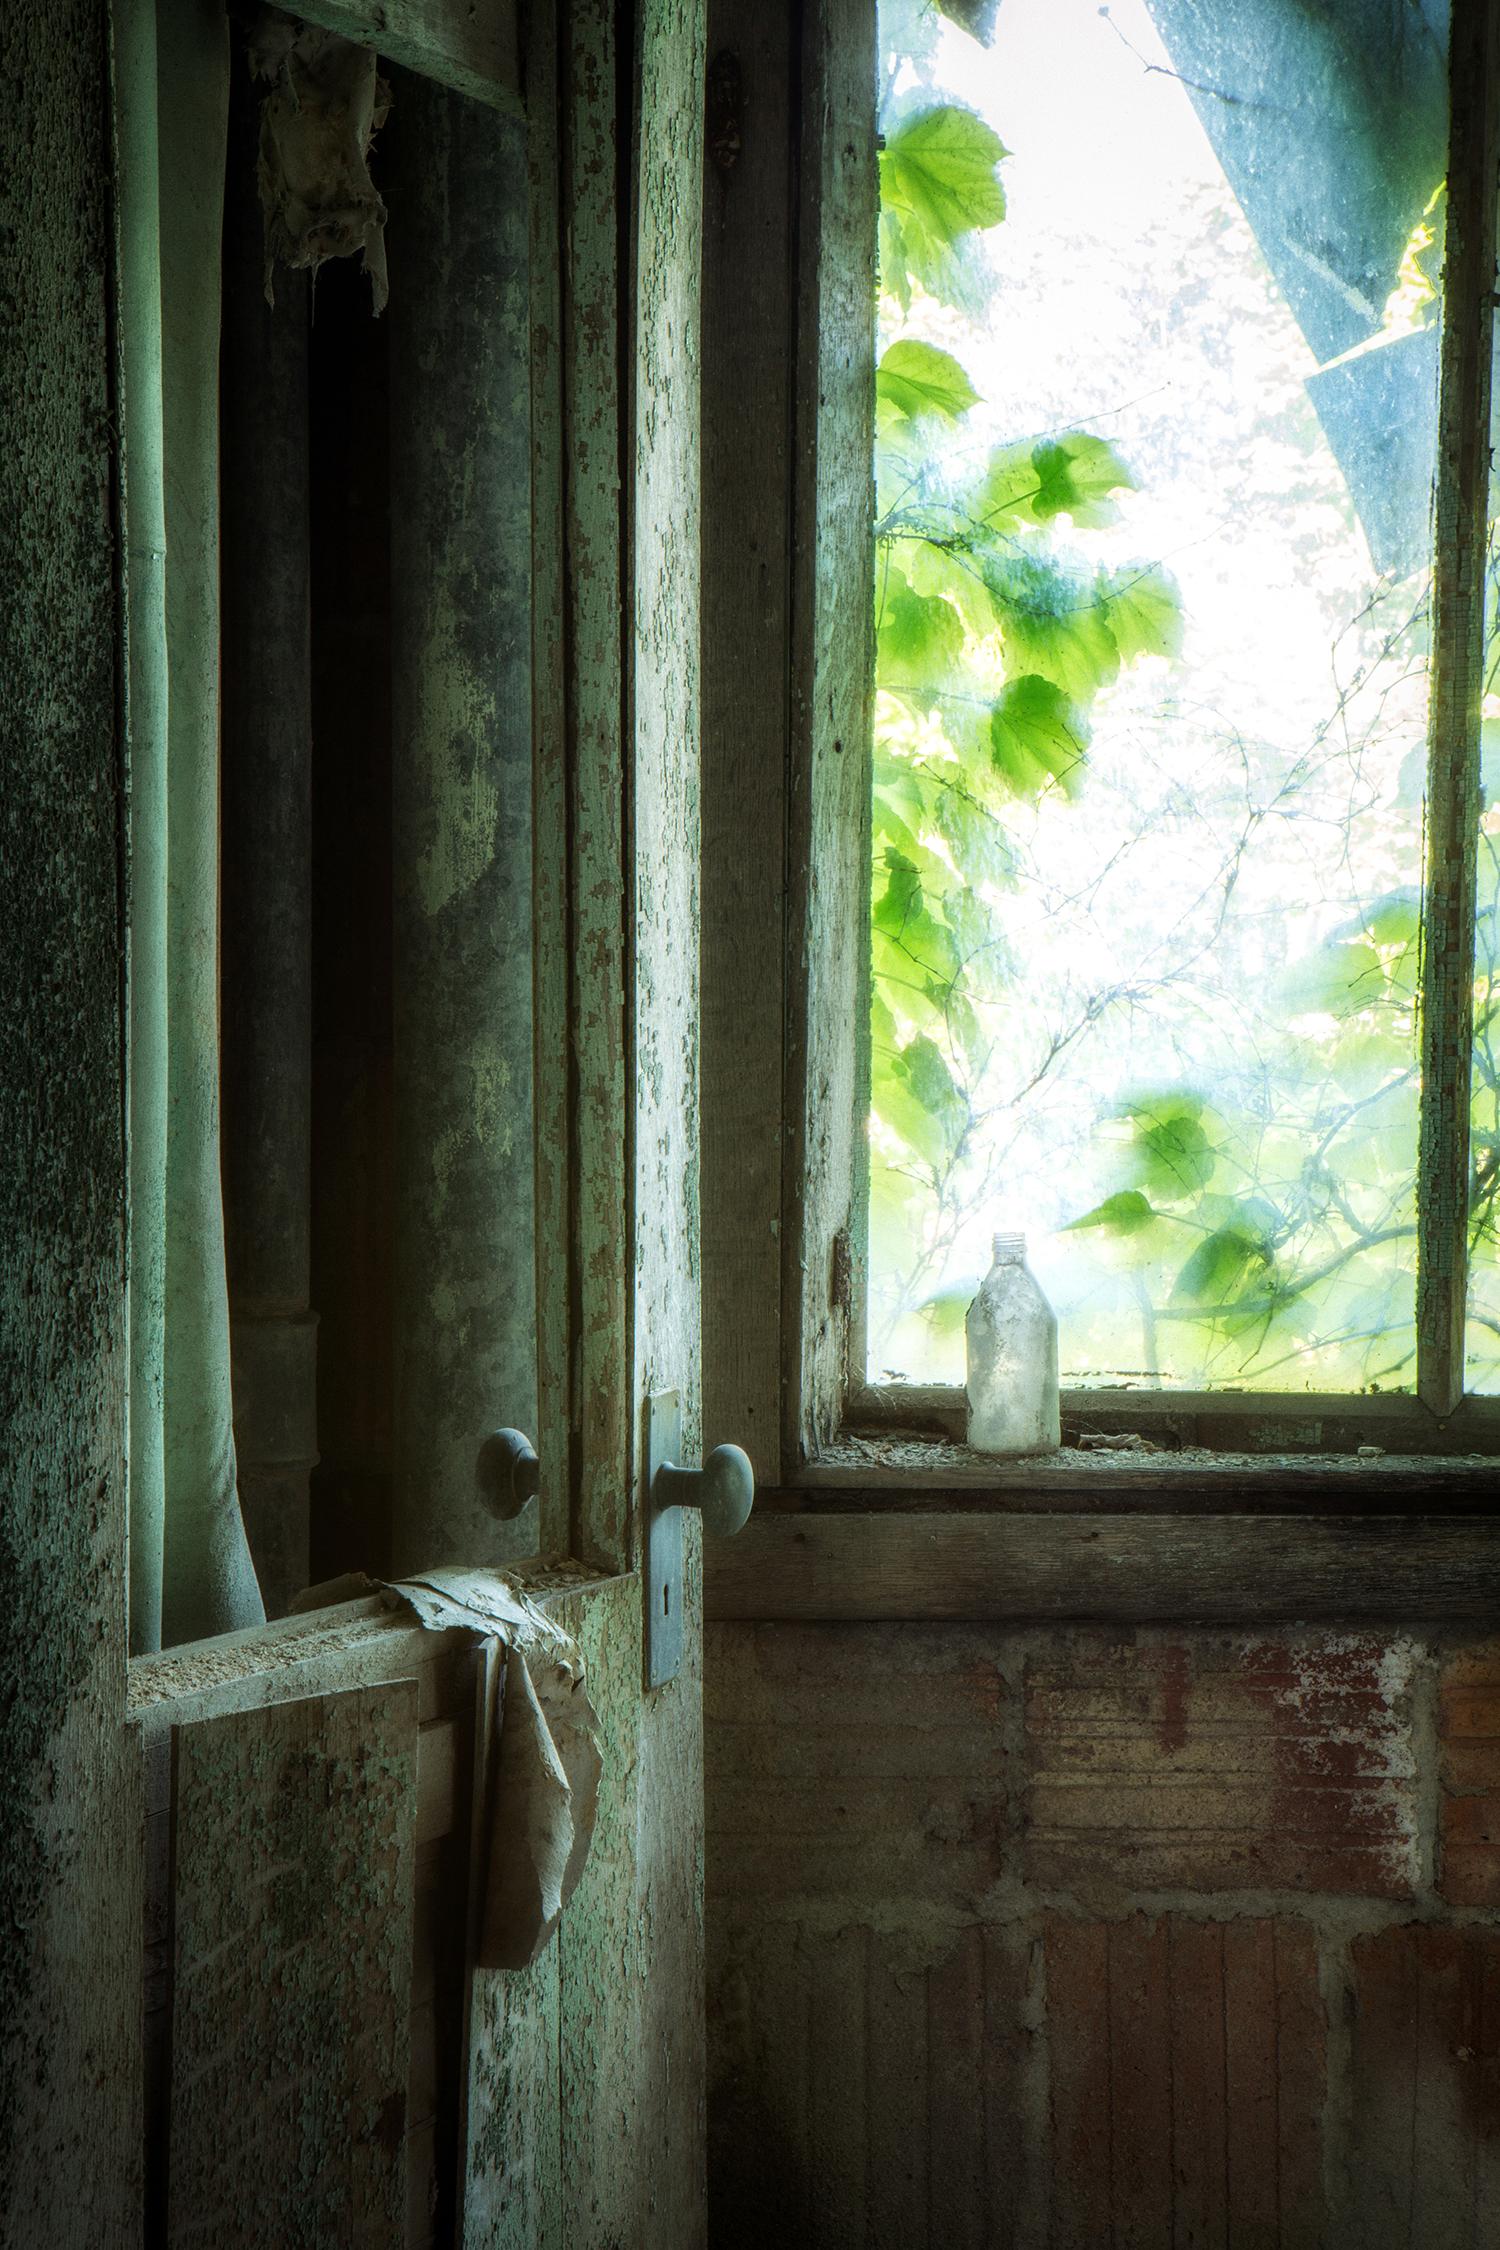 Rebecca Skinner Still-Life Photograph – "Überreste", zeitgenössisch, verlassen, Fenster, Tür, blau, grün, Farbfotografie